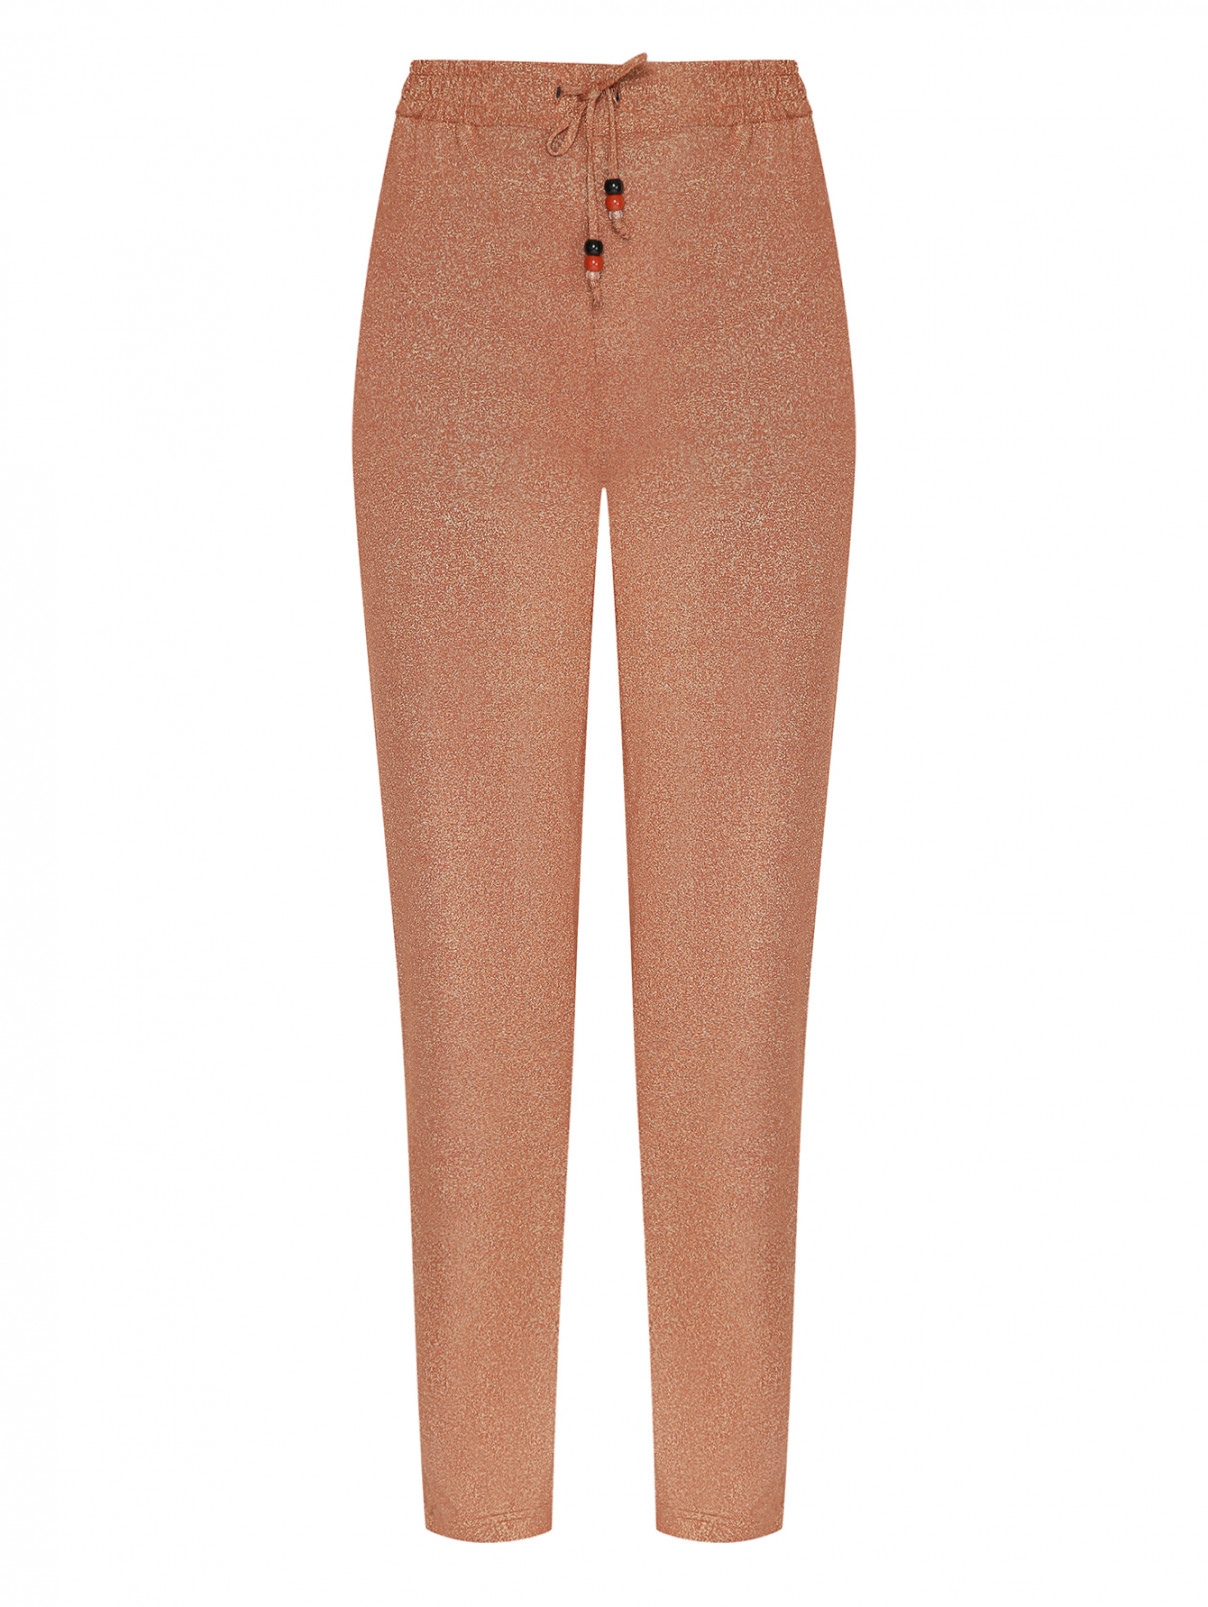 Трикотажные брюки с блеском Marina Rinaldi  –  Общий вид  – Цвет:  Коричневый